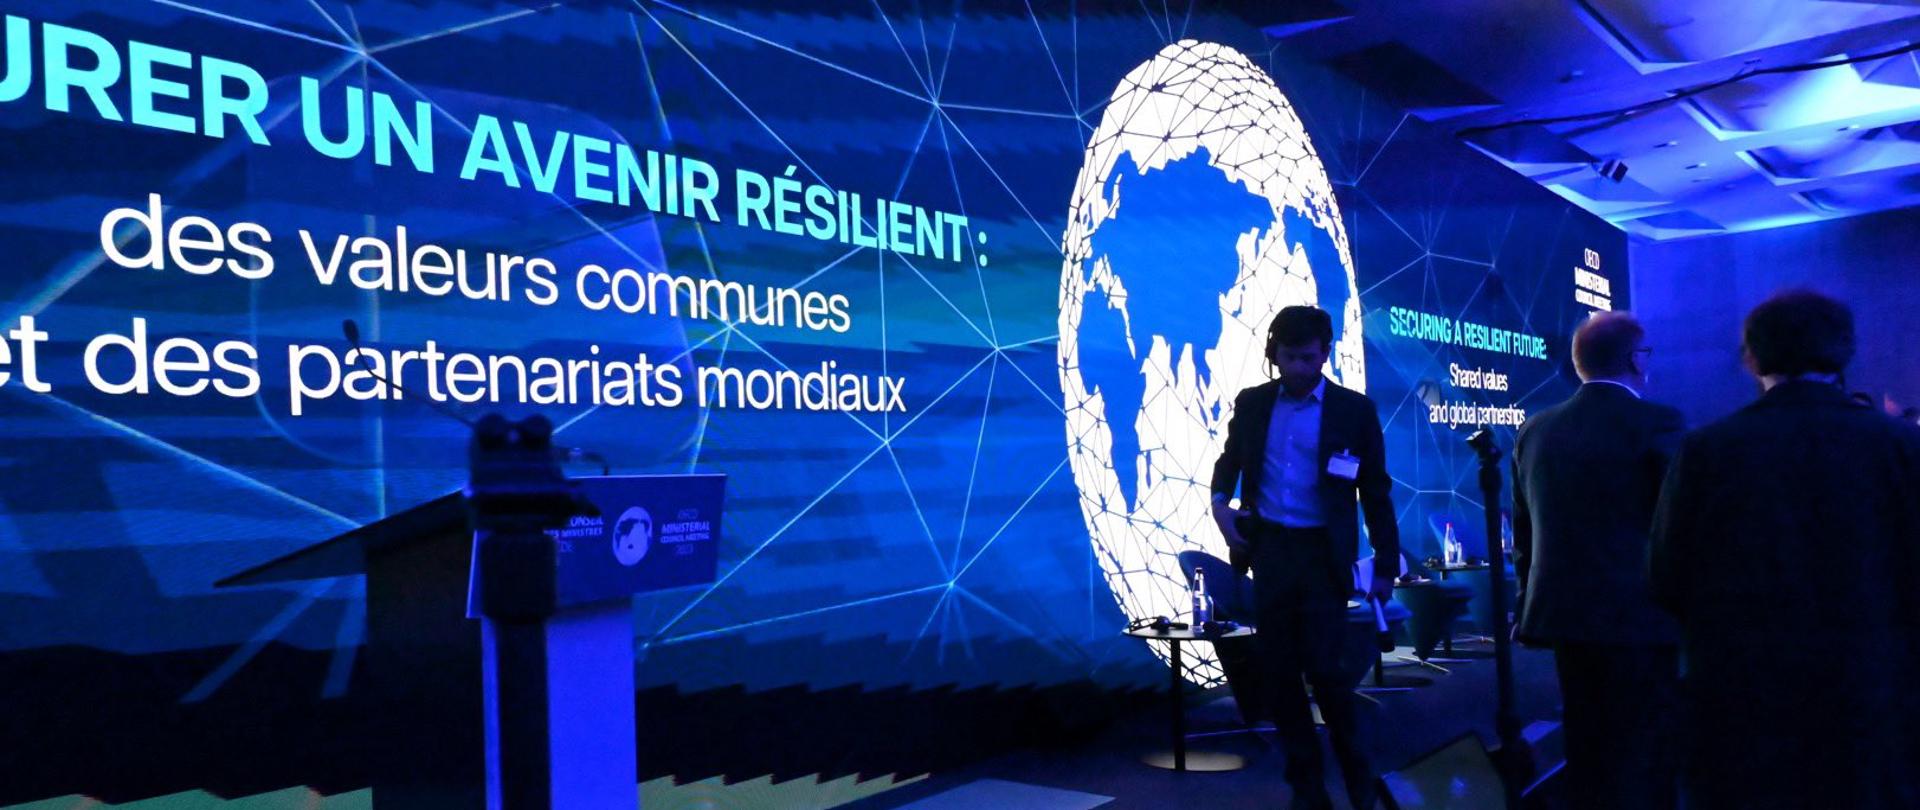 minister klimatu i środowiska Anna Moskwa uczestniczy w Sesji Ministerialnej Rady OECD pod hasłem „Securing a resilient future: Shared values and global partnerships” w Paryżu